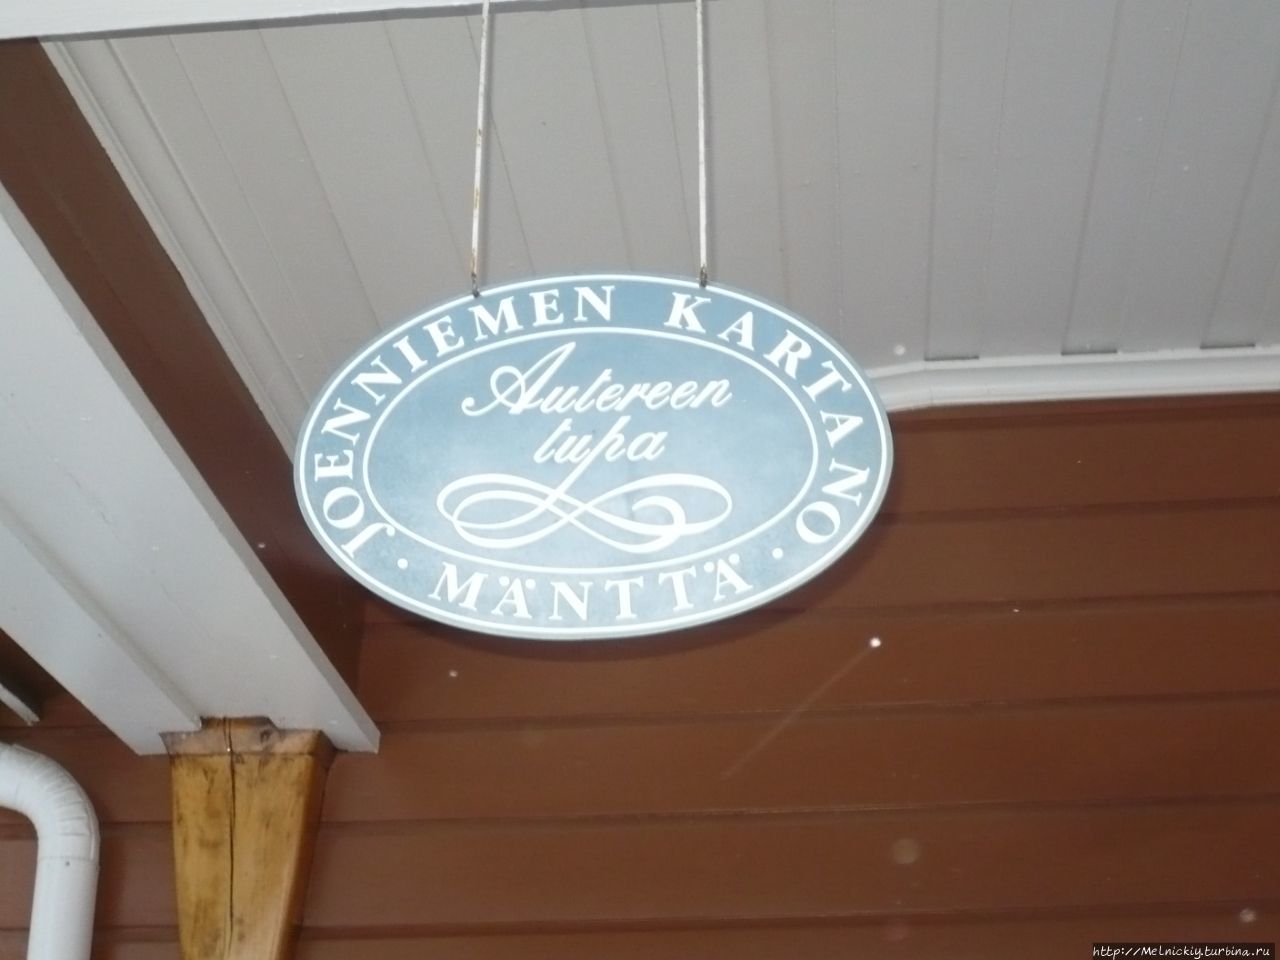 Кафе «Autereen tupa» Мянття, Финляндия